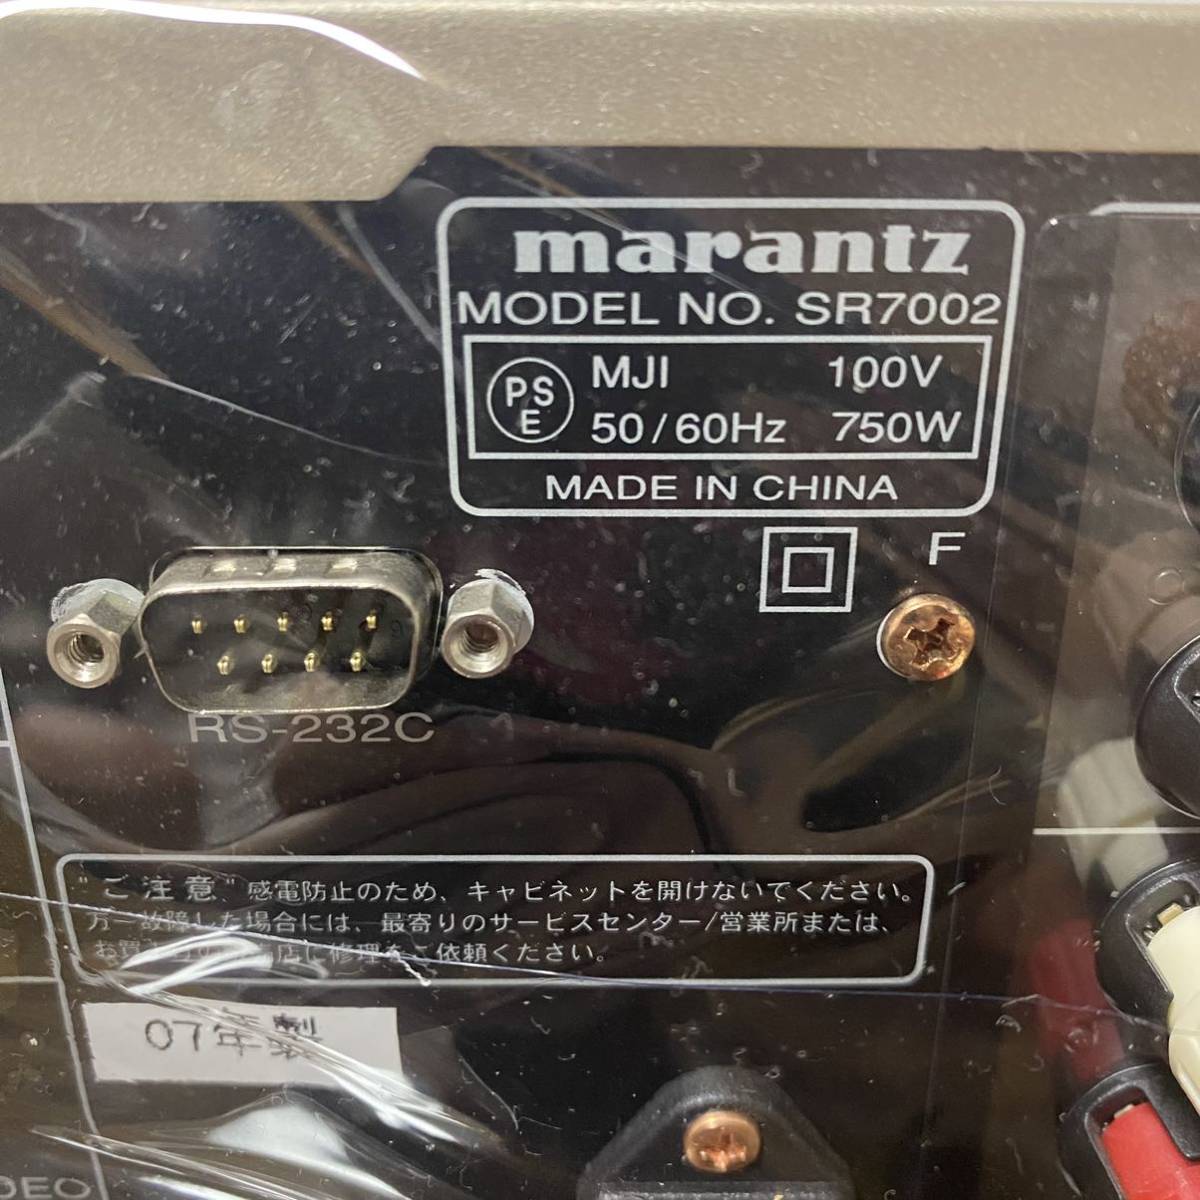  Marantz AV amplifier SR7002